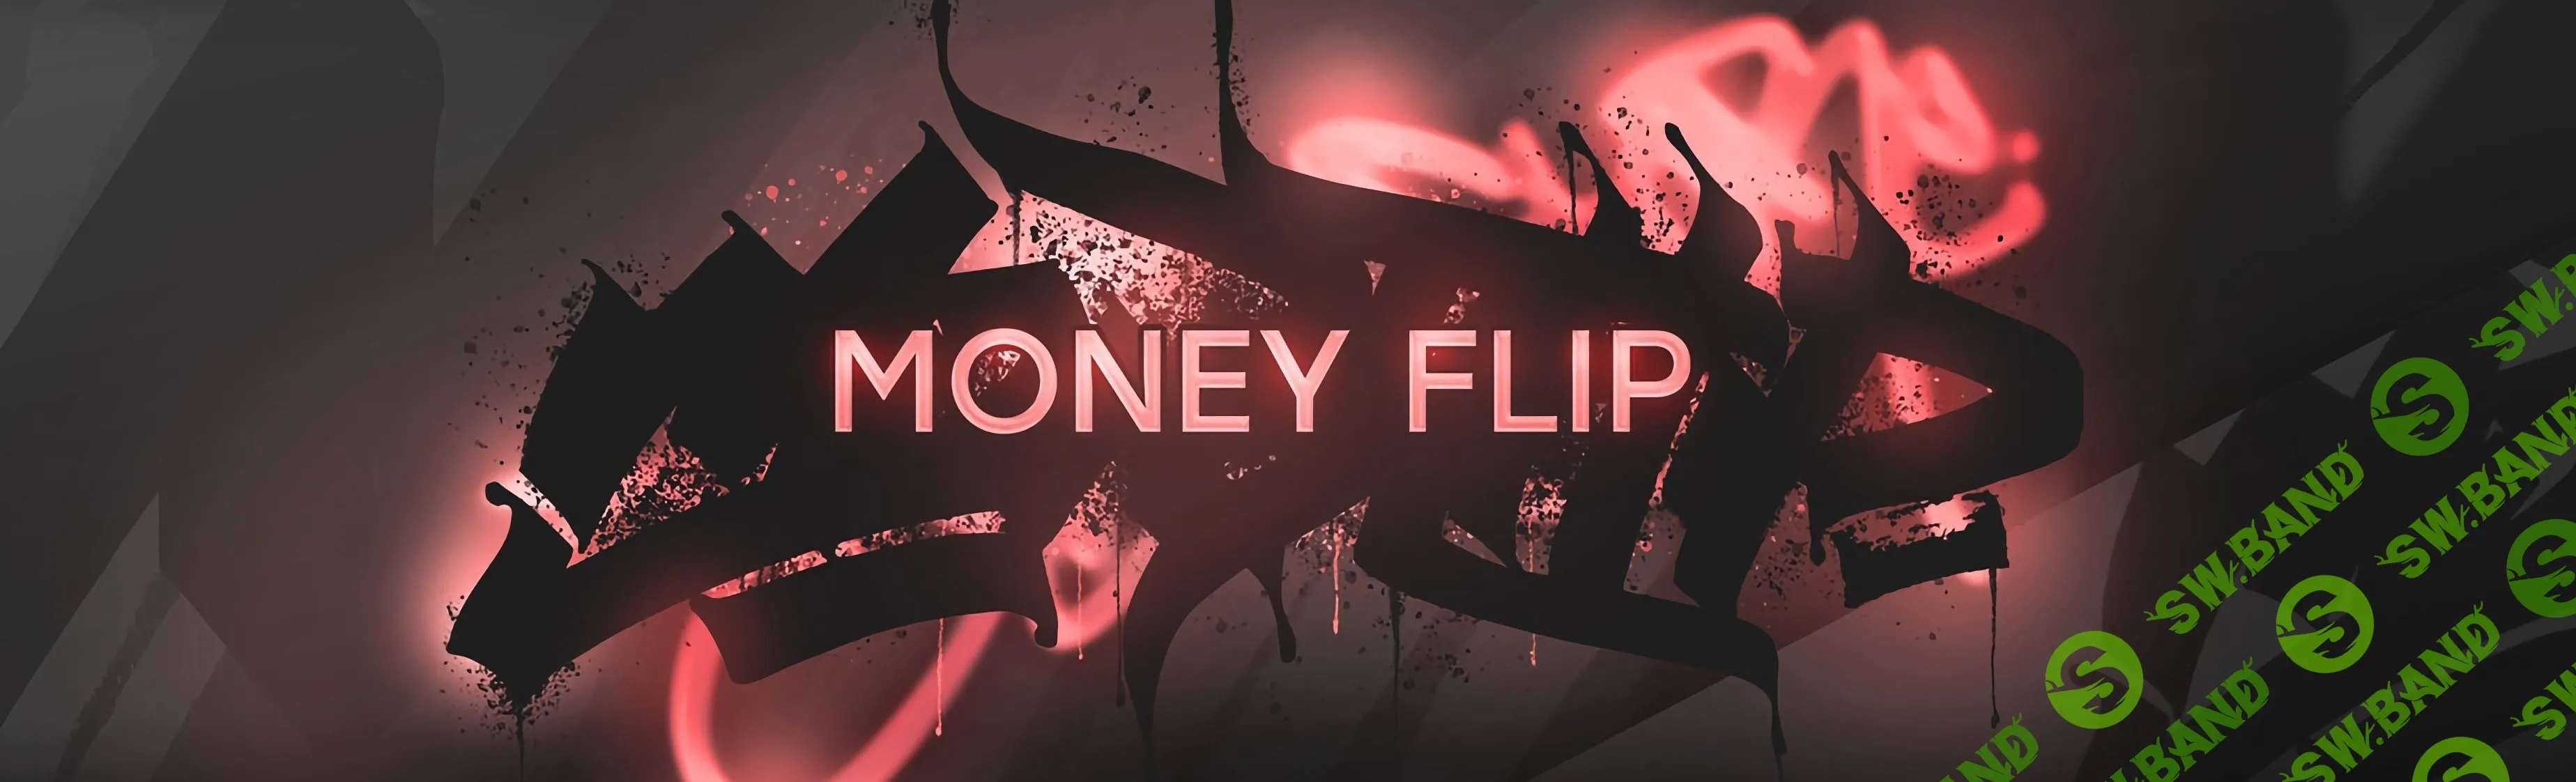 [Money Flip] Создание коммерческого бита в FL Studio